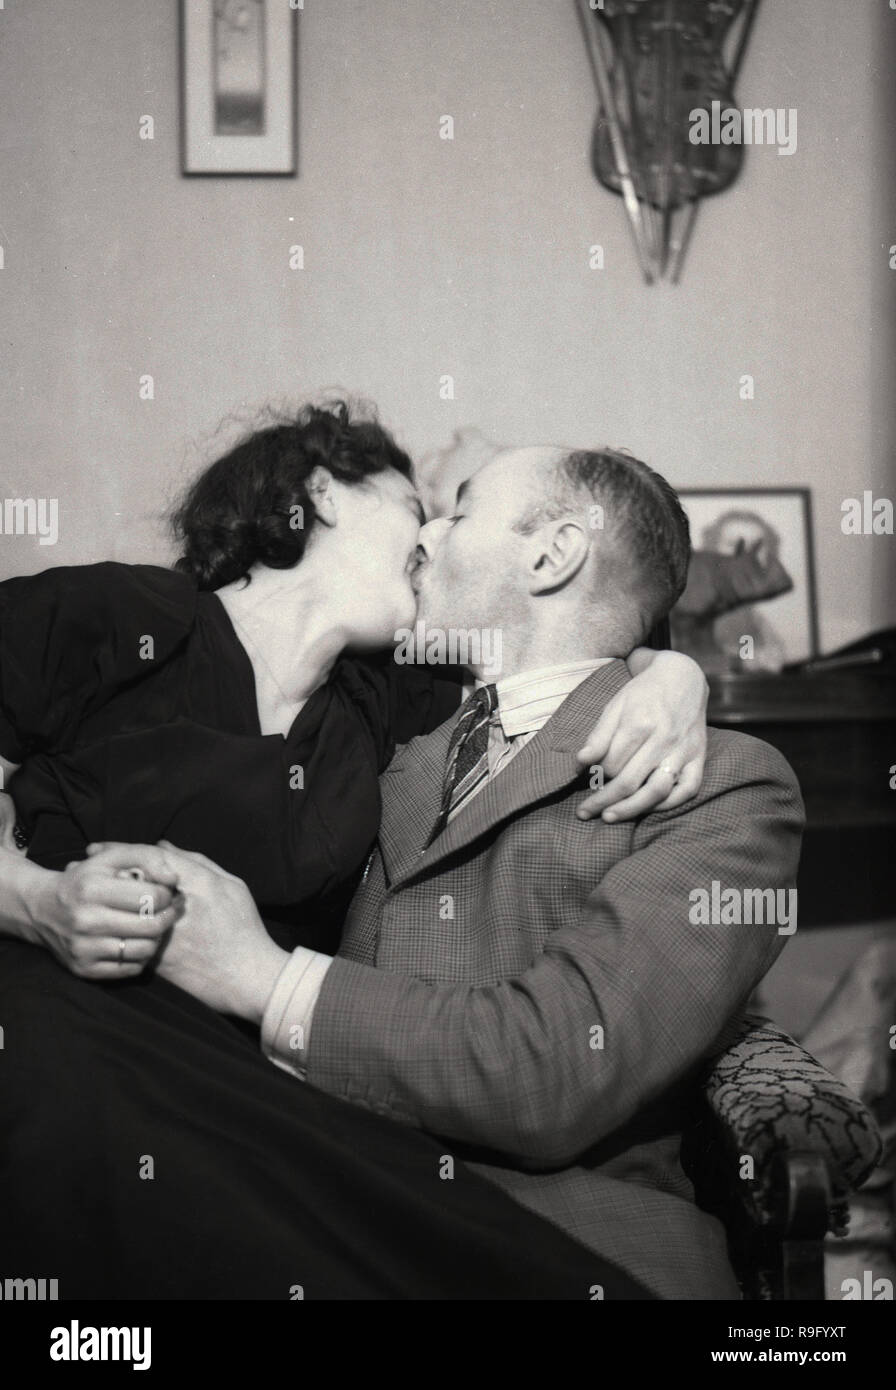 Degli anni Cinquanta, un paio di baciare, un uomo anziano con una giovane donna seduta insieme su una sedia che abbraccia, Inghilterra, Regno Unito. Foto Stock